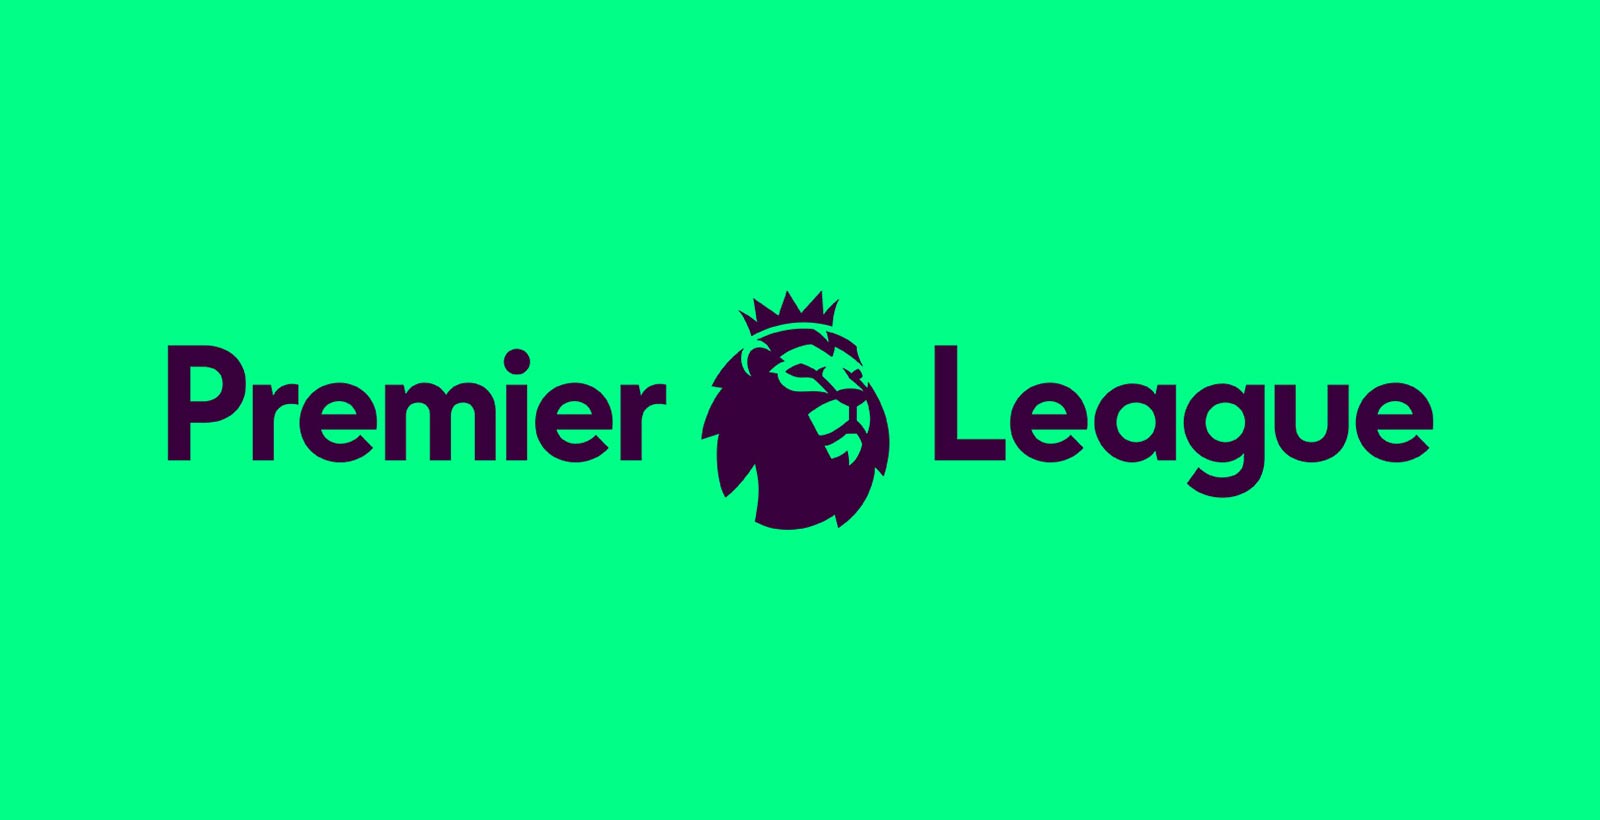 new-premier-league-logo-2016-17-9